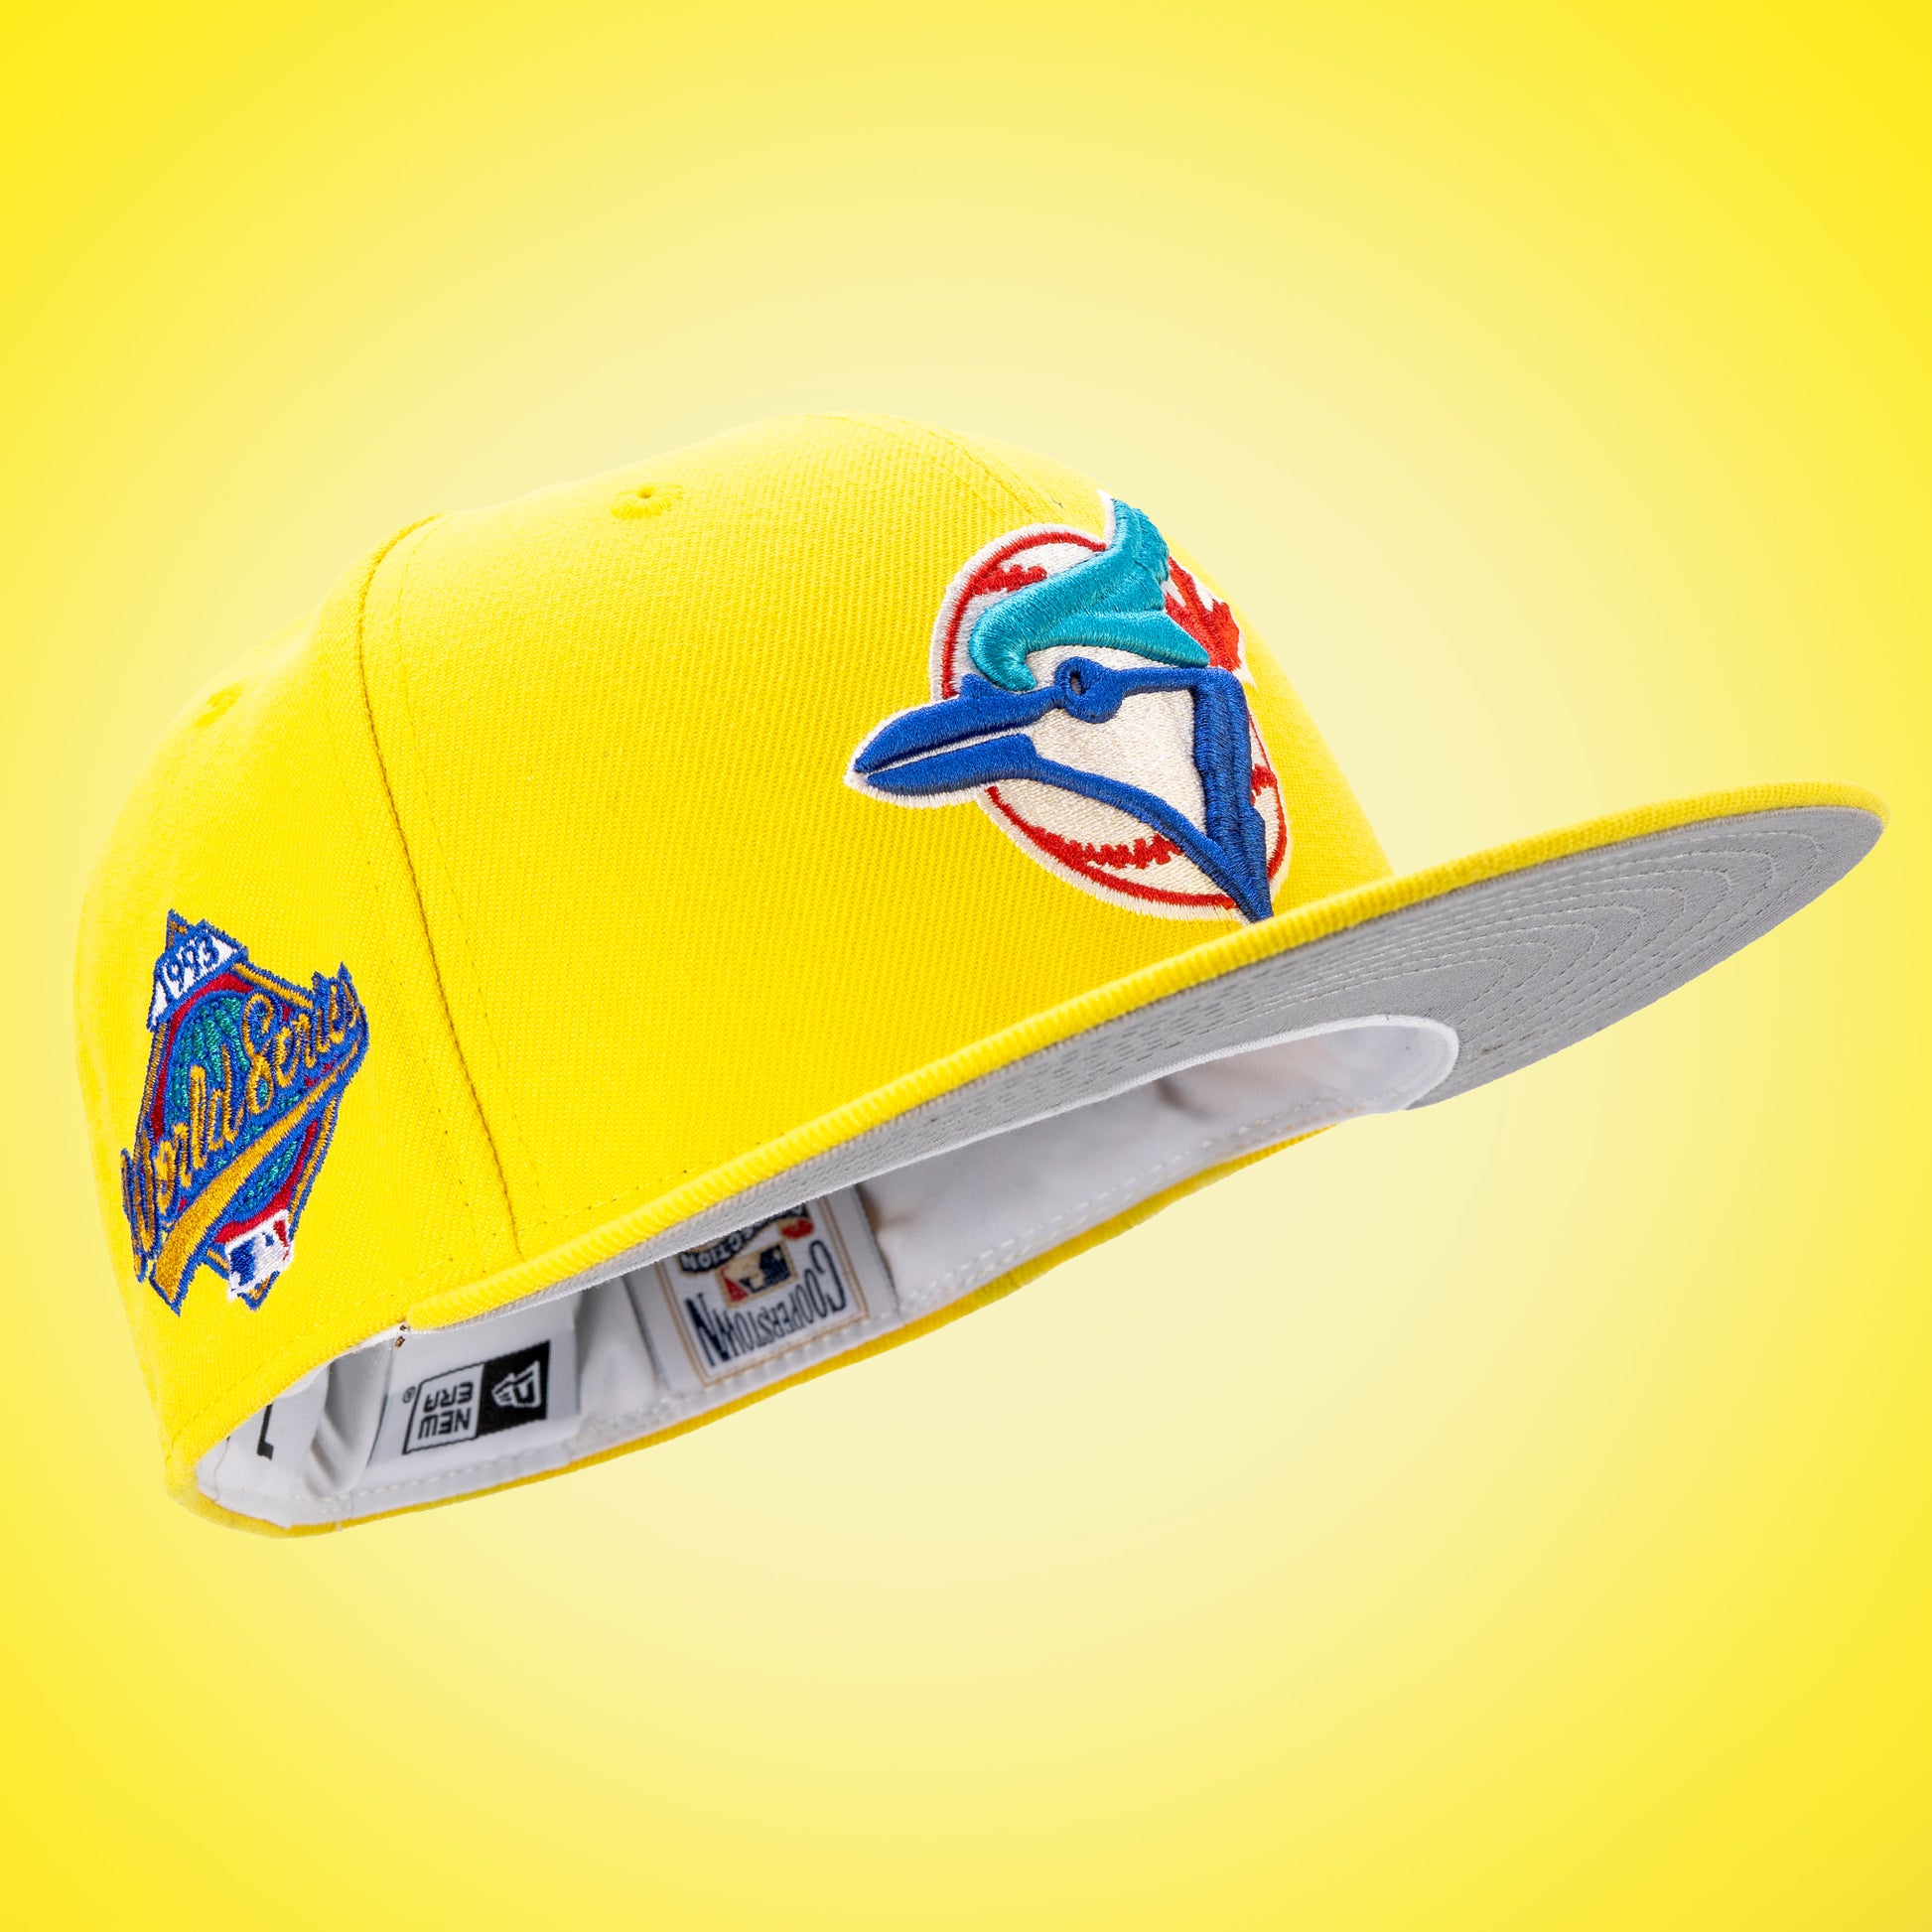 Toronto Blue Jays Hat, Blue Jays Hats, Baseball Cap